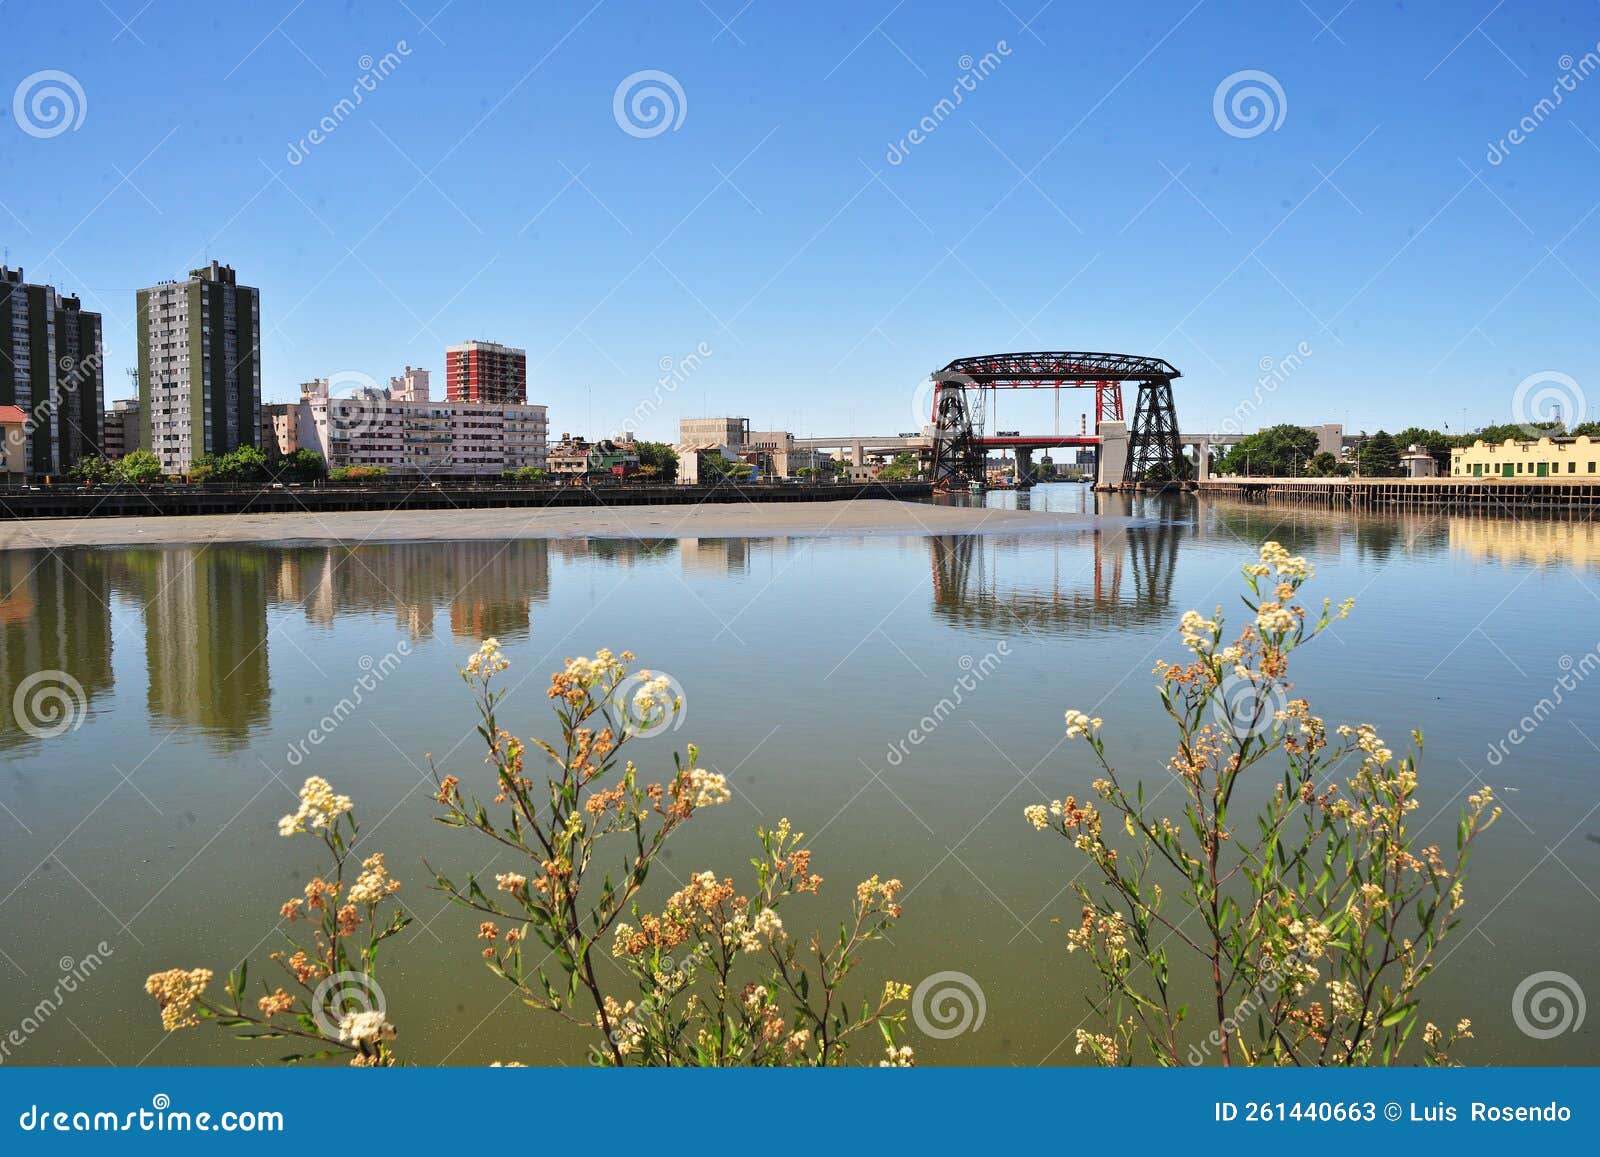 buenos aires argentina old nicolas avellaneda steel bridge across riachuelo in la boca, buenos aires argentina